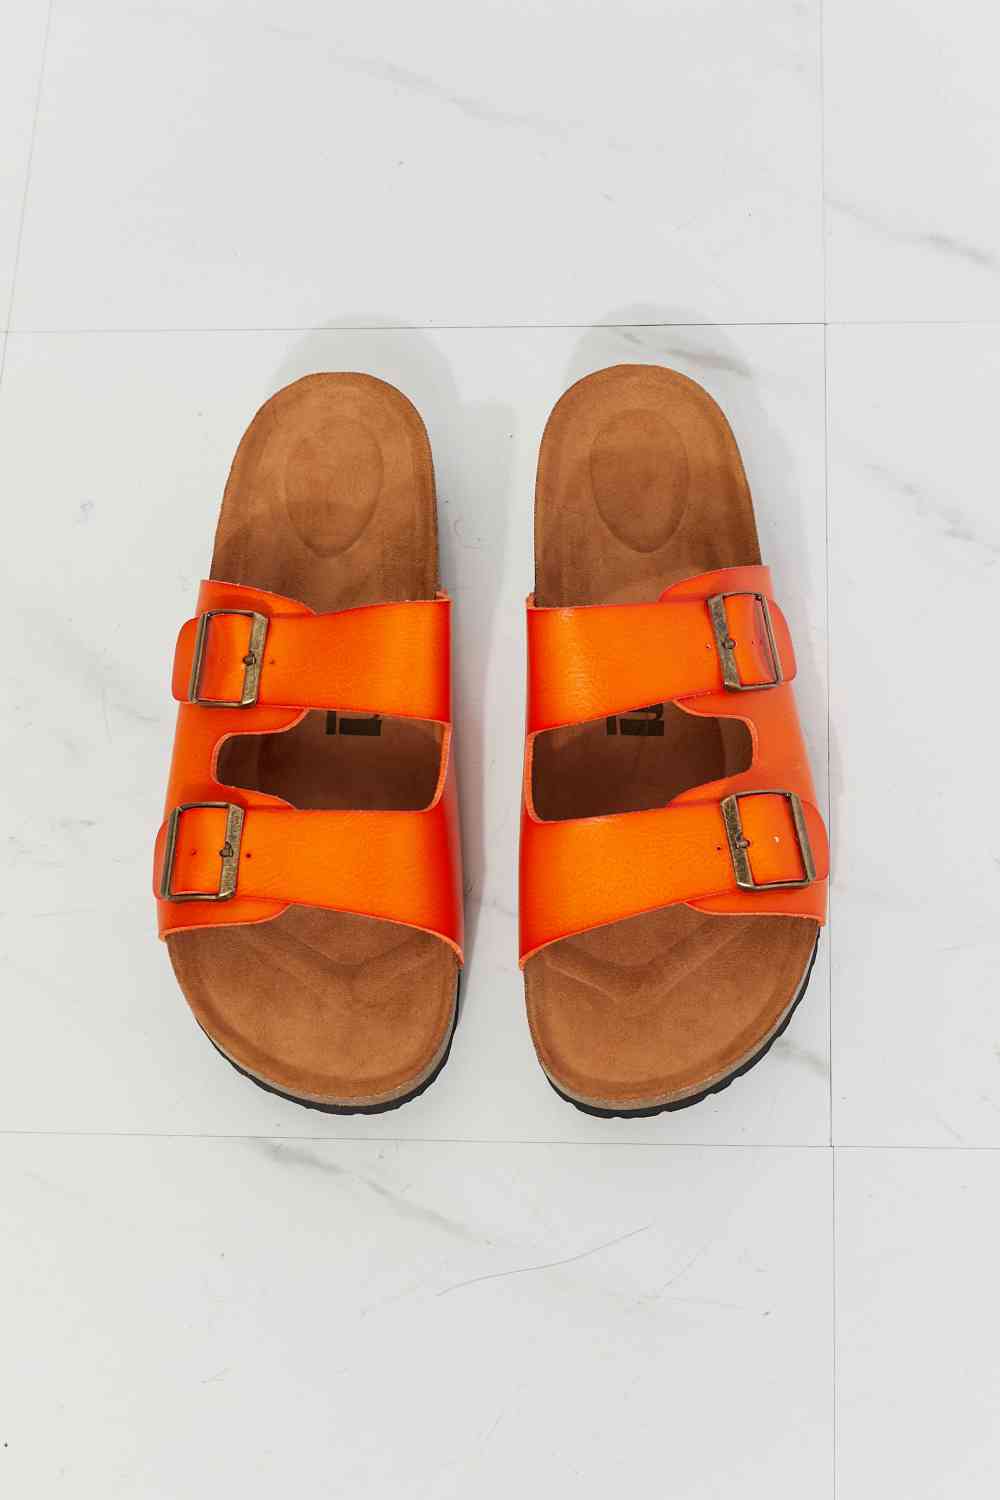 MMShoes Feeling Alive Double Banded Slide Sandals in Orange No 4